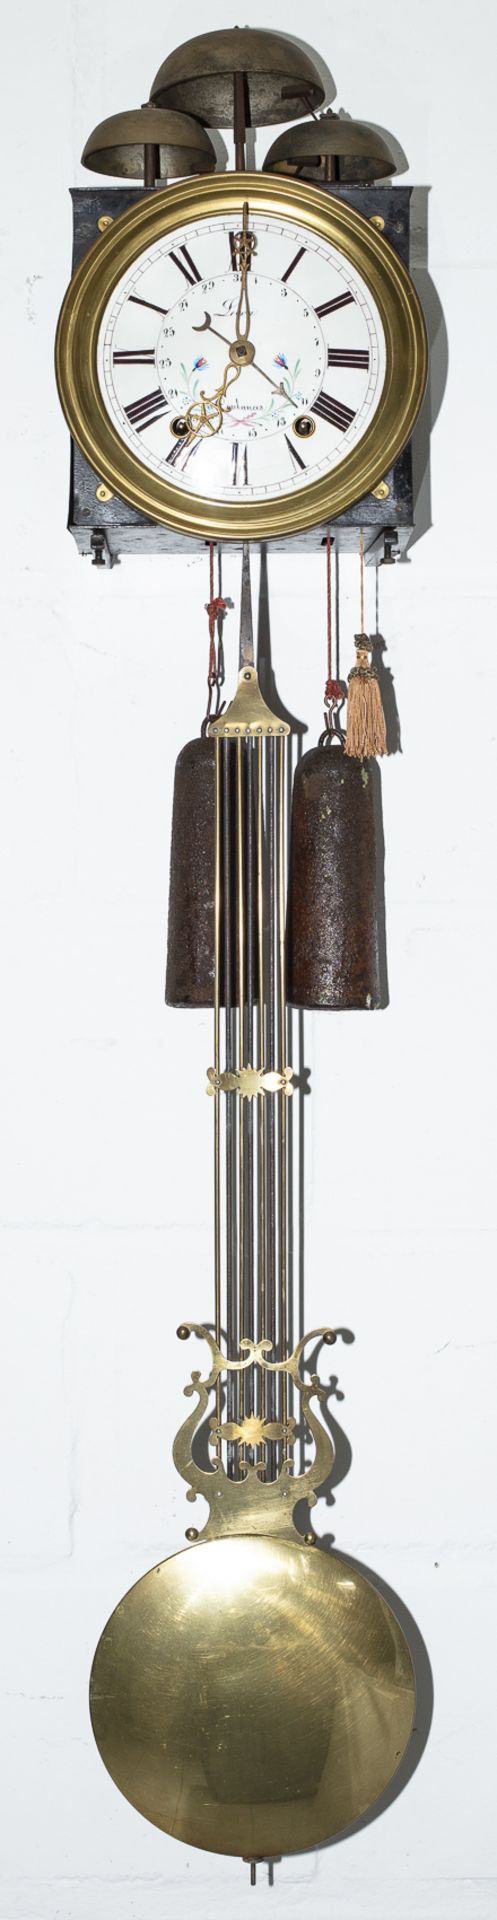 Comtoise-Uhr mit 3 Glocken und Viertelstundenschlag, Franche-Comté, um 1840-50 - Image 2 of 3